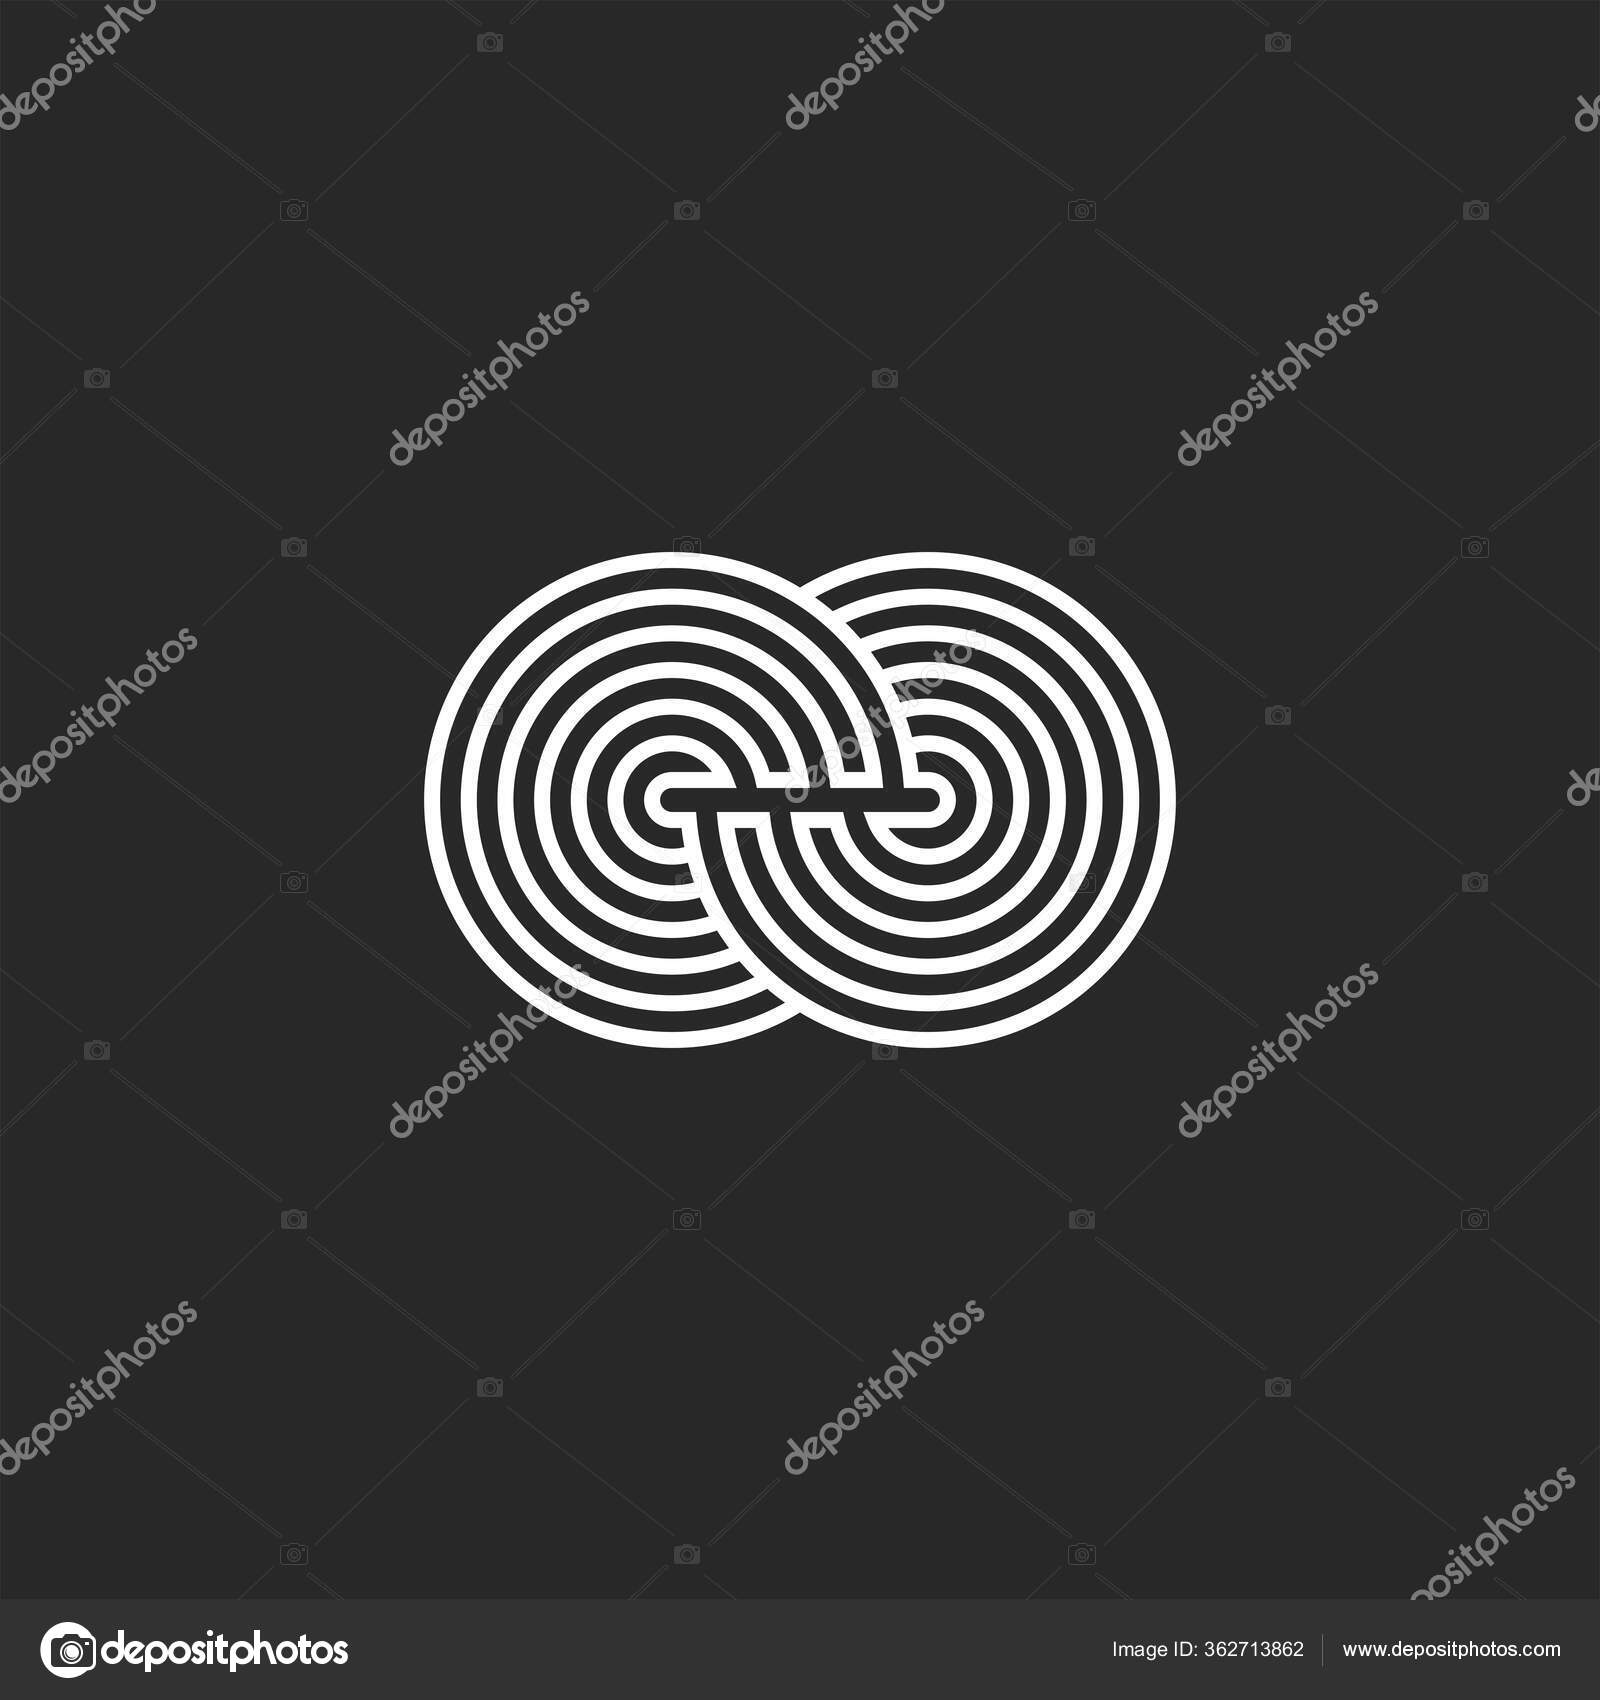 Ícone do vetor labirinto no símbolo mínimo de linha fina do vetor